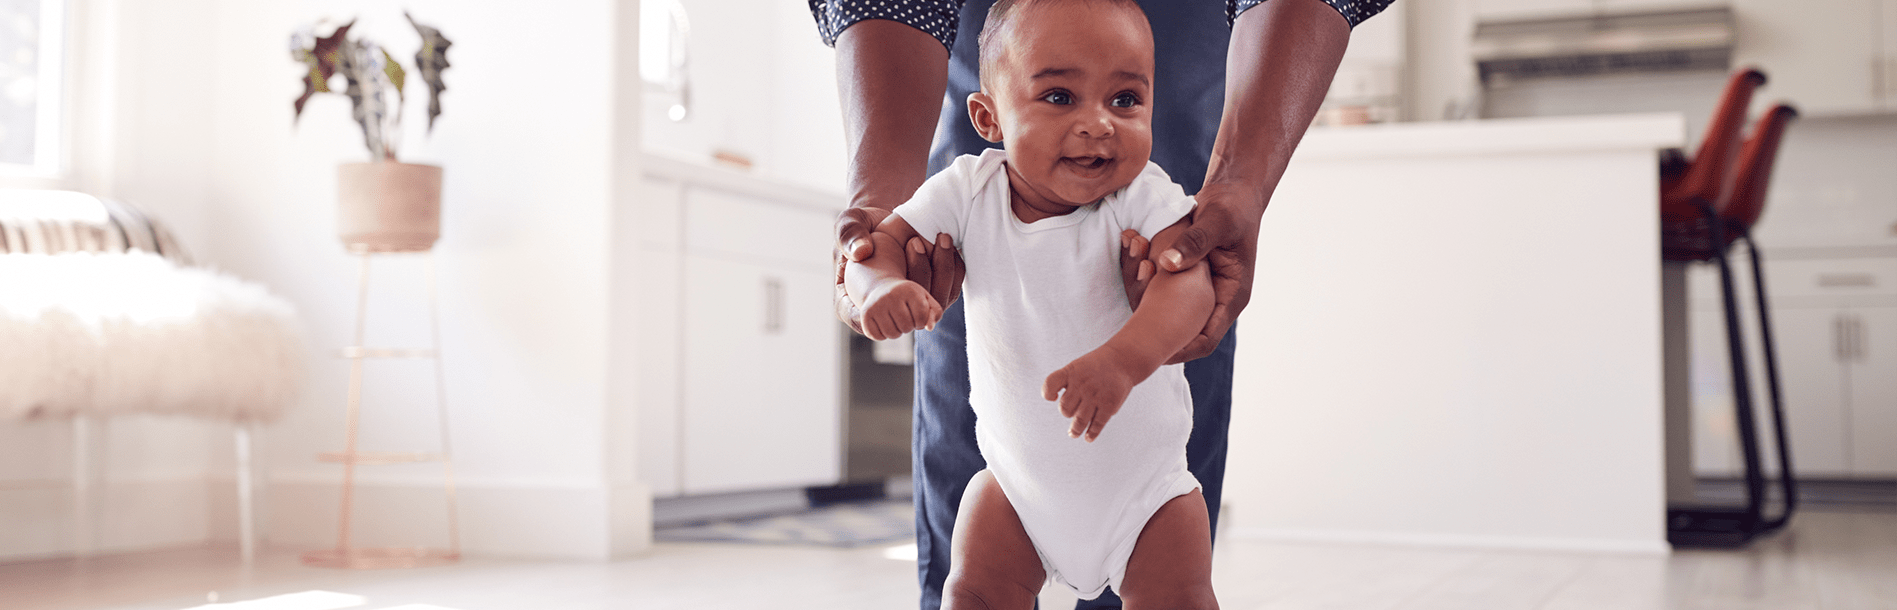 Como ajudar o bebê a andar?